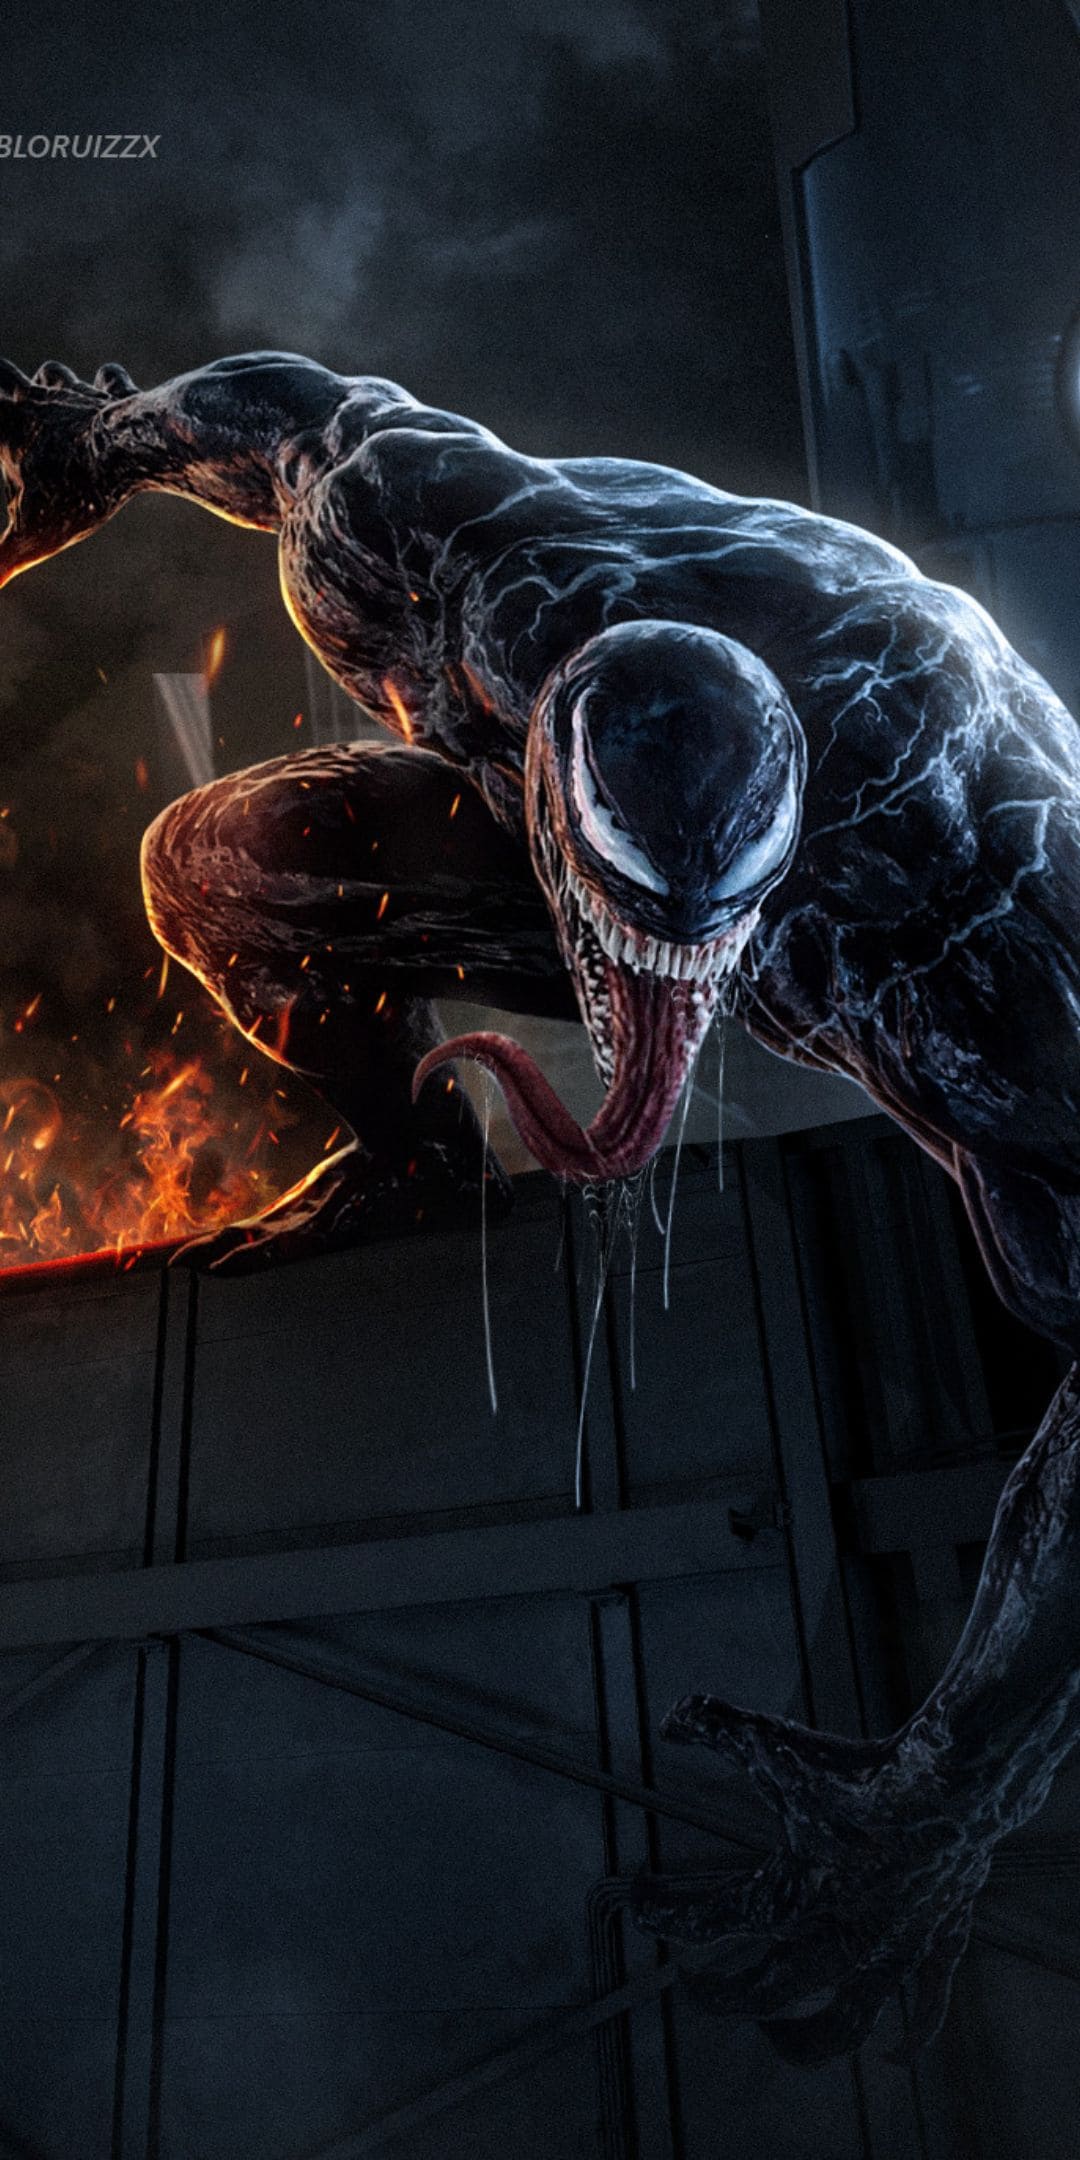 Venom Wallpaper Best Free Venom Photo & Image Download